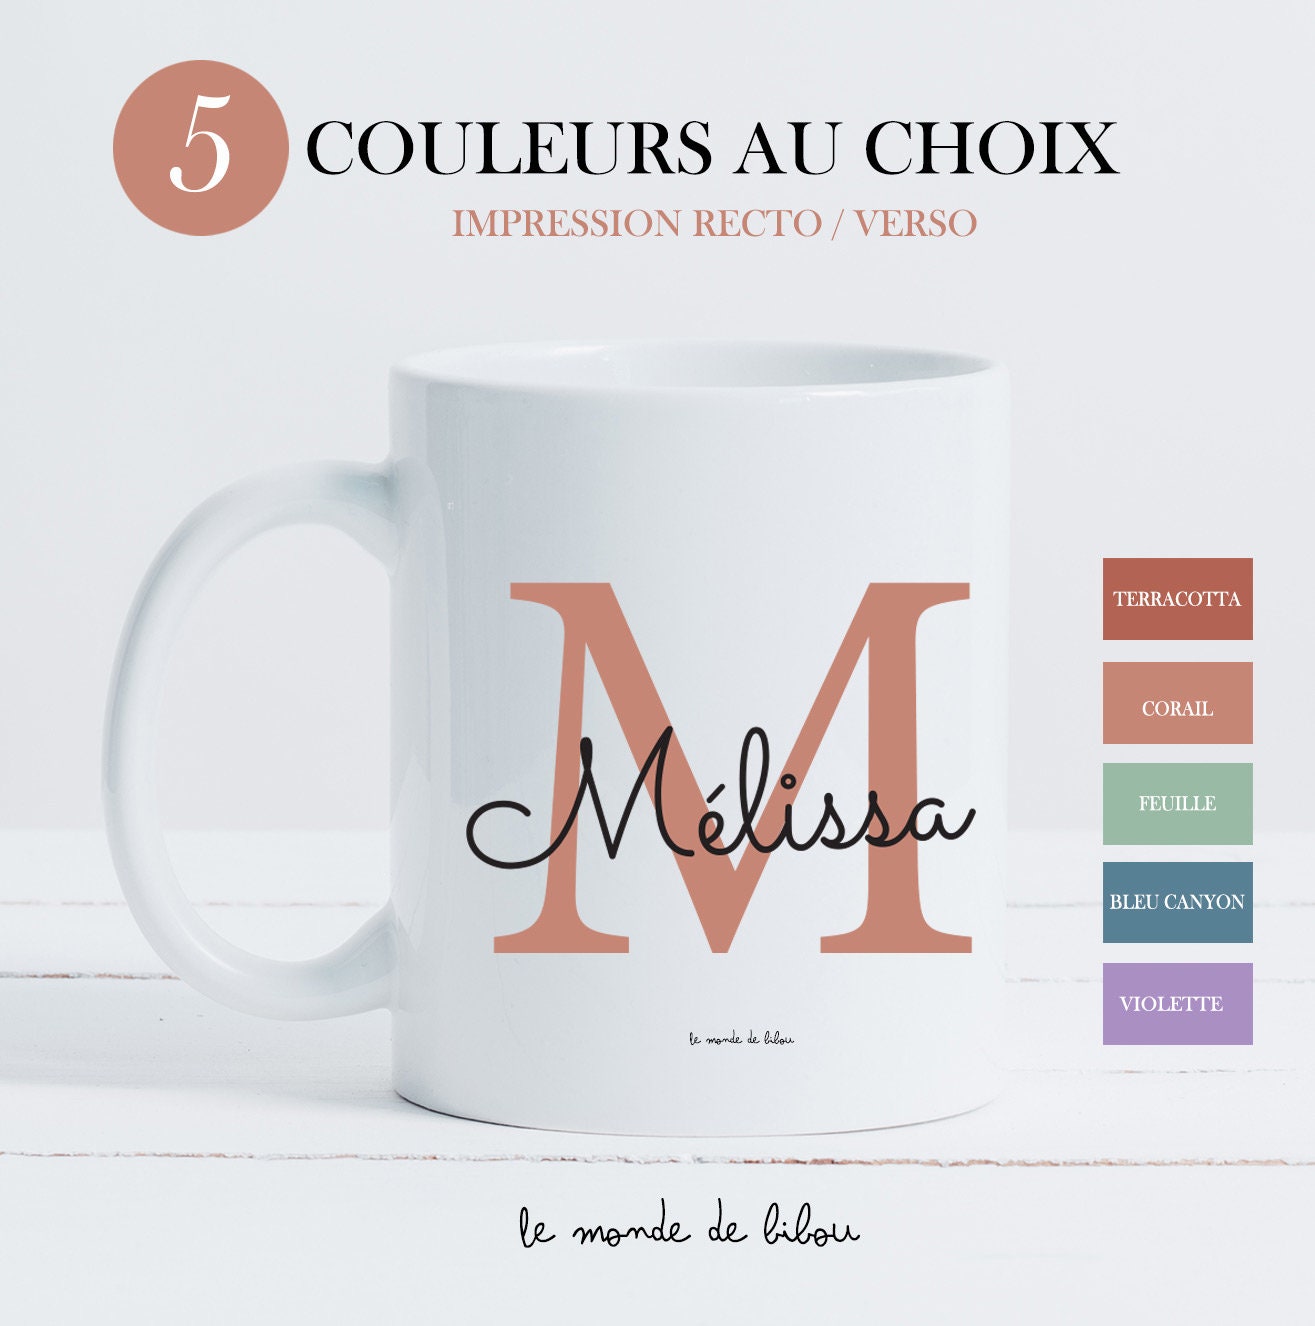 Mugs tasses incassables - Le Monde de Bibou - Cadeaux personnalisés